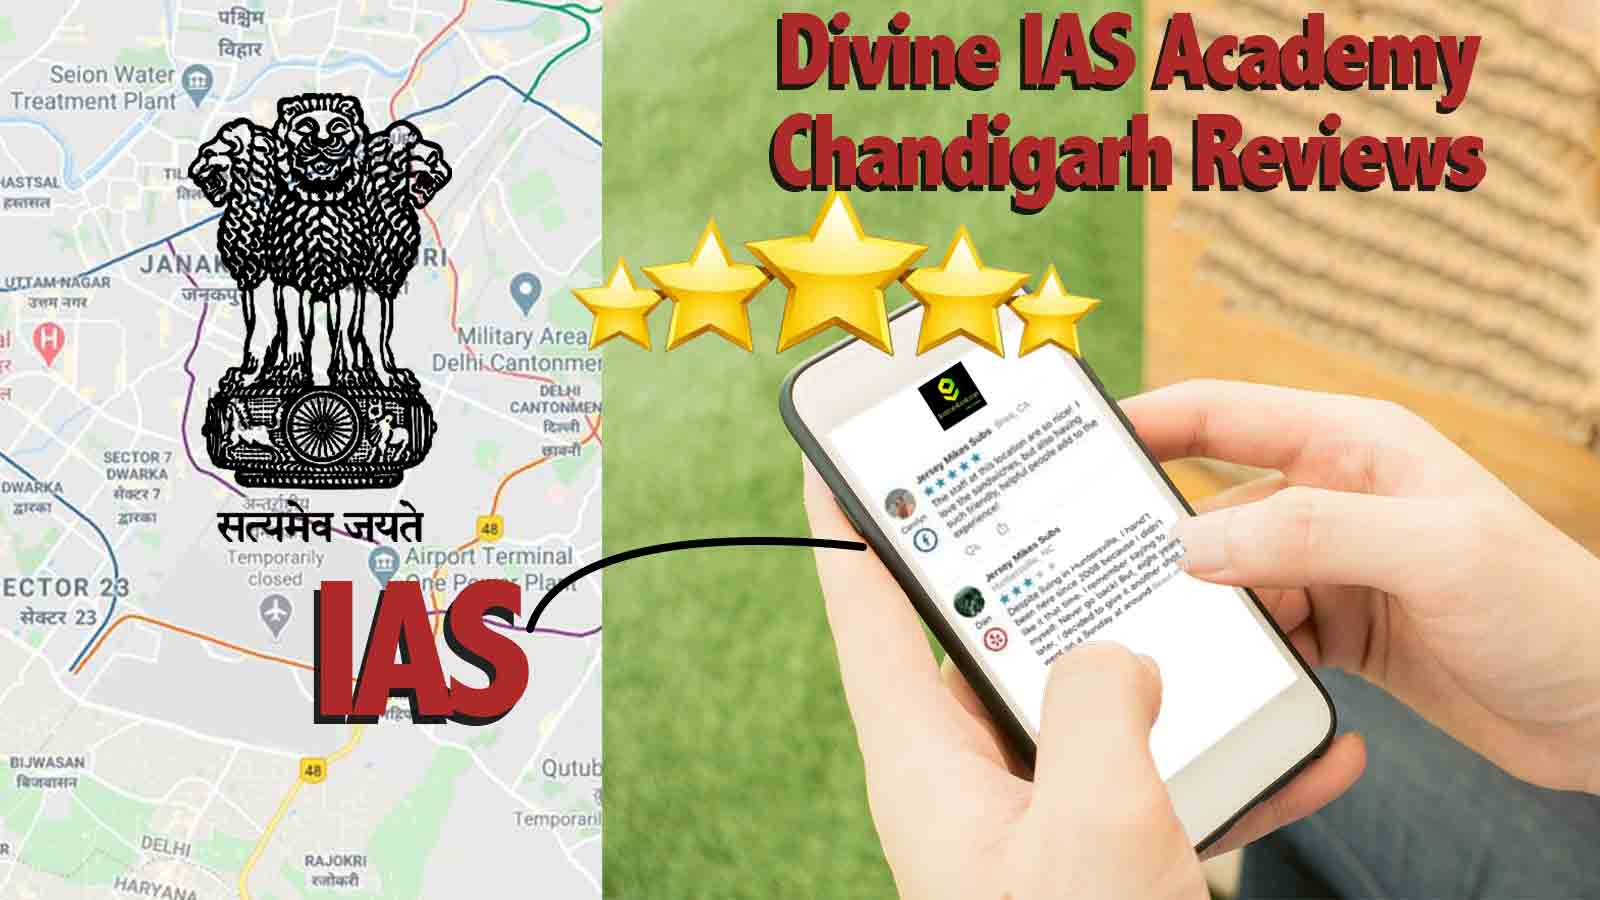 Divine IAS Academy Chandigarh Reviews